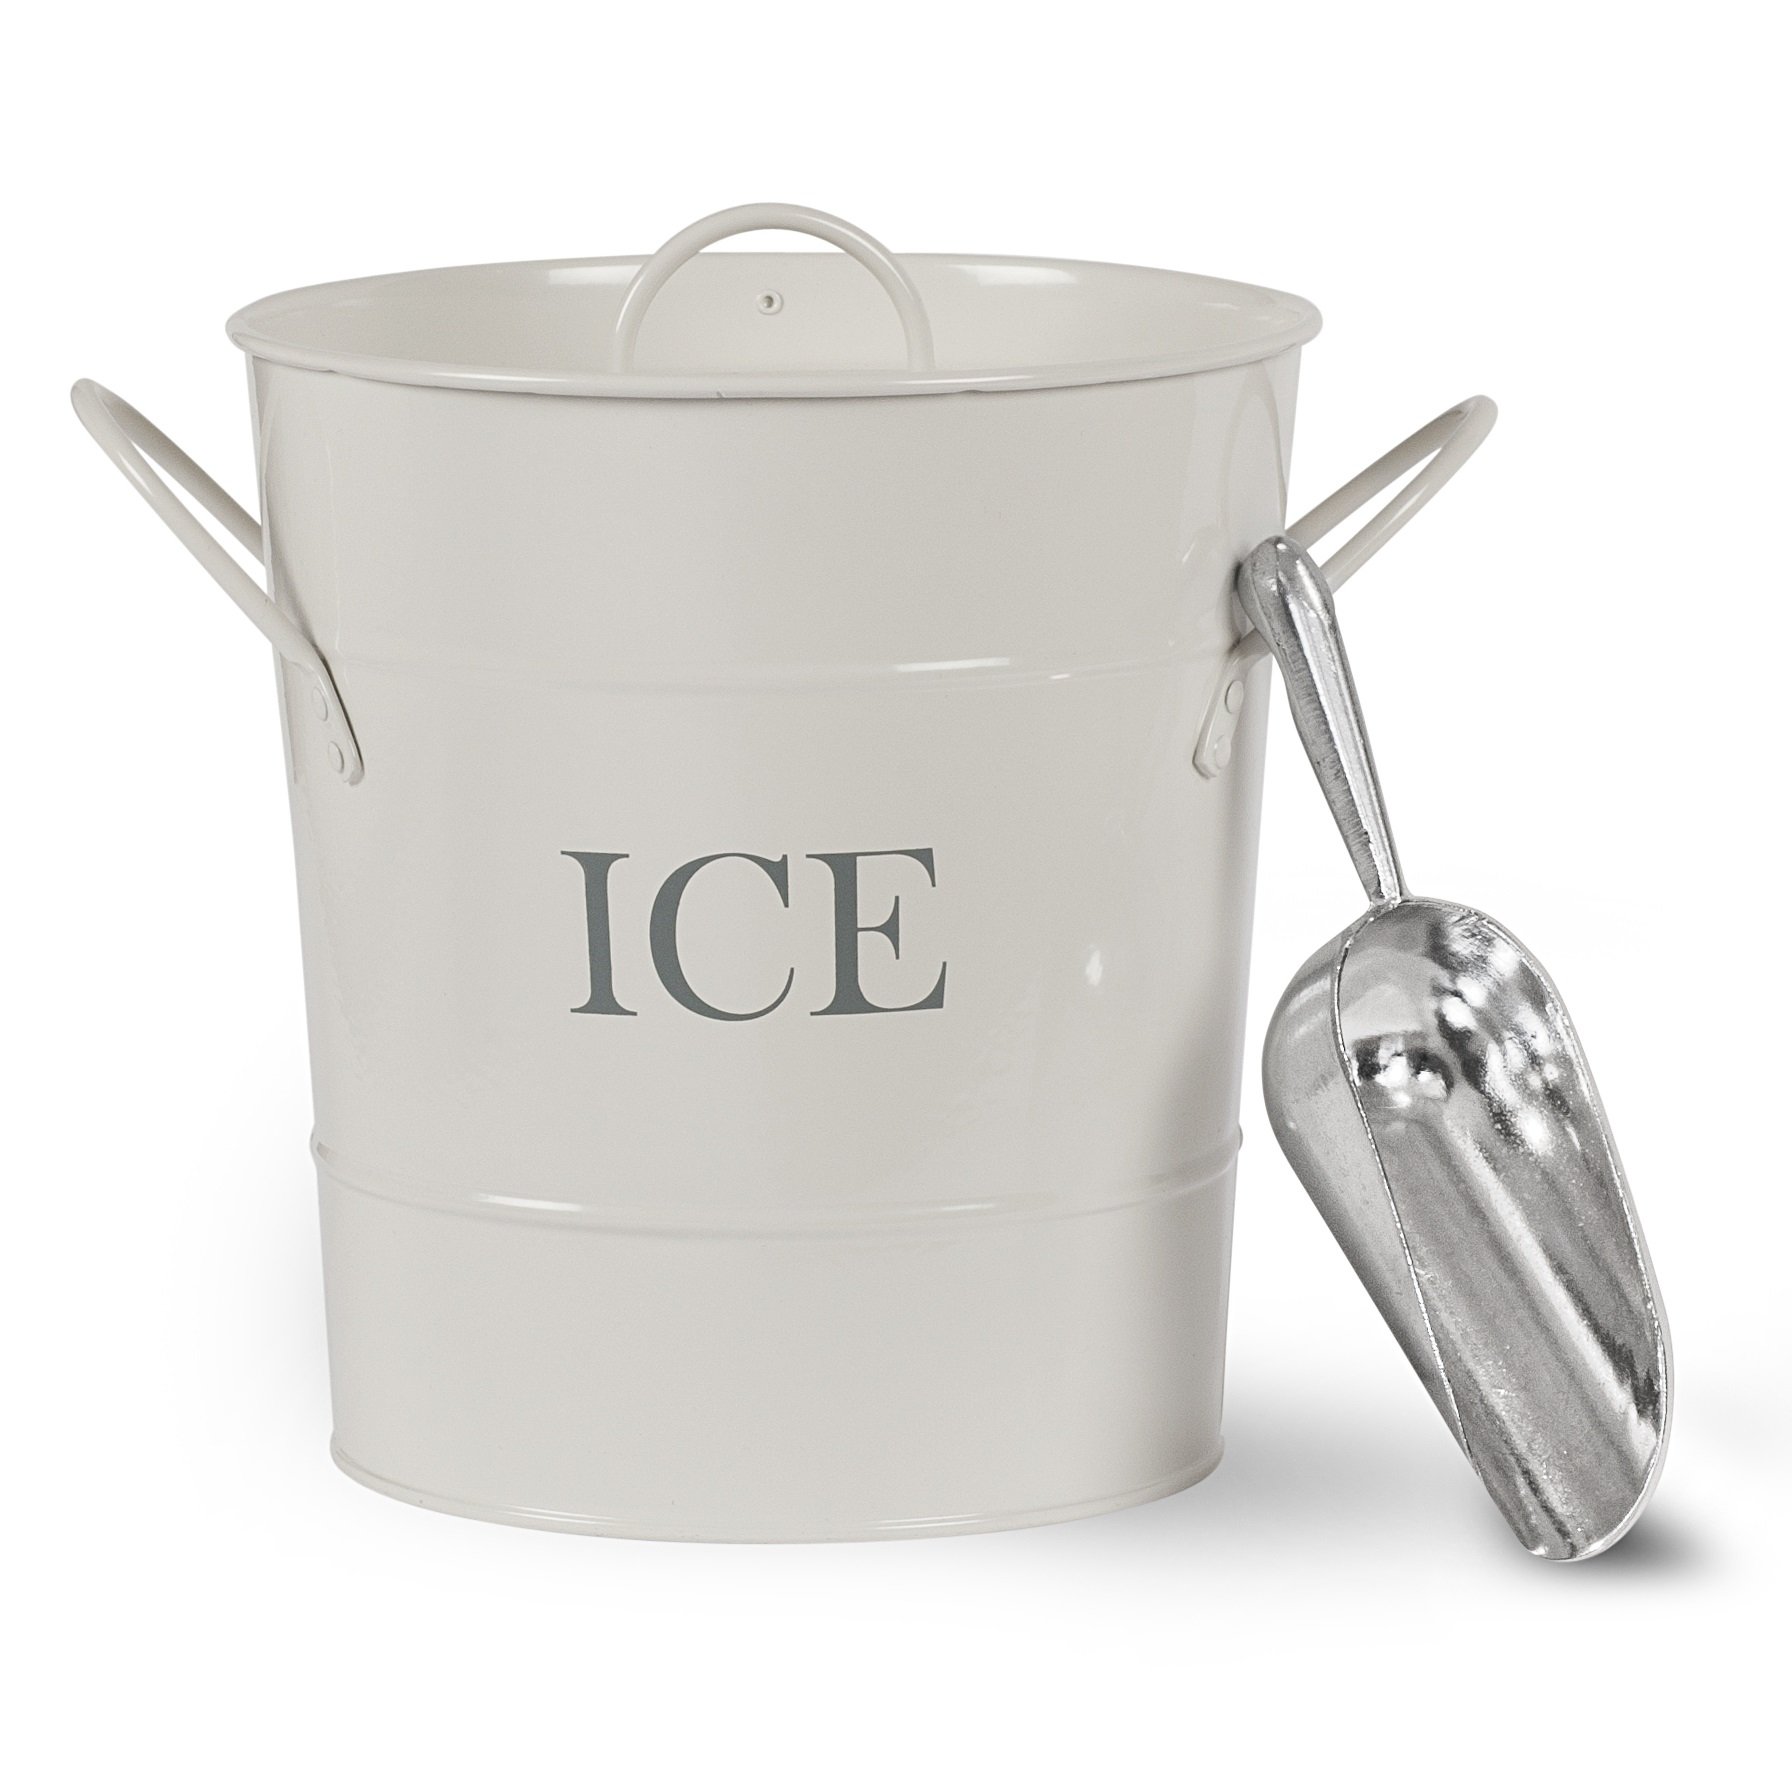 CKB LTD Ice Bucket Eiswürfelbehälter Eiseimer Eisbehälter mit Deckel Eisschaufel Schaufel Innen oder im Freien unterhaltsam Retro Vintage Themed Farbige Kreide weiß pulverbeschichtet Stahl